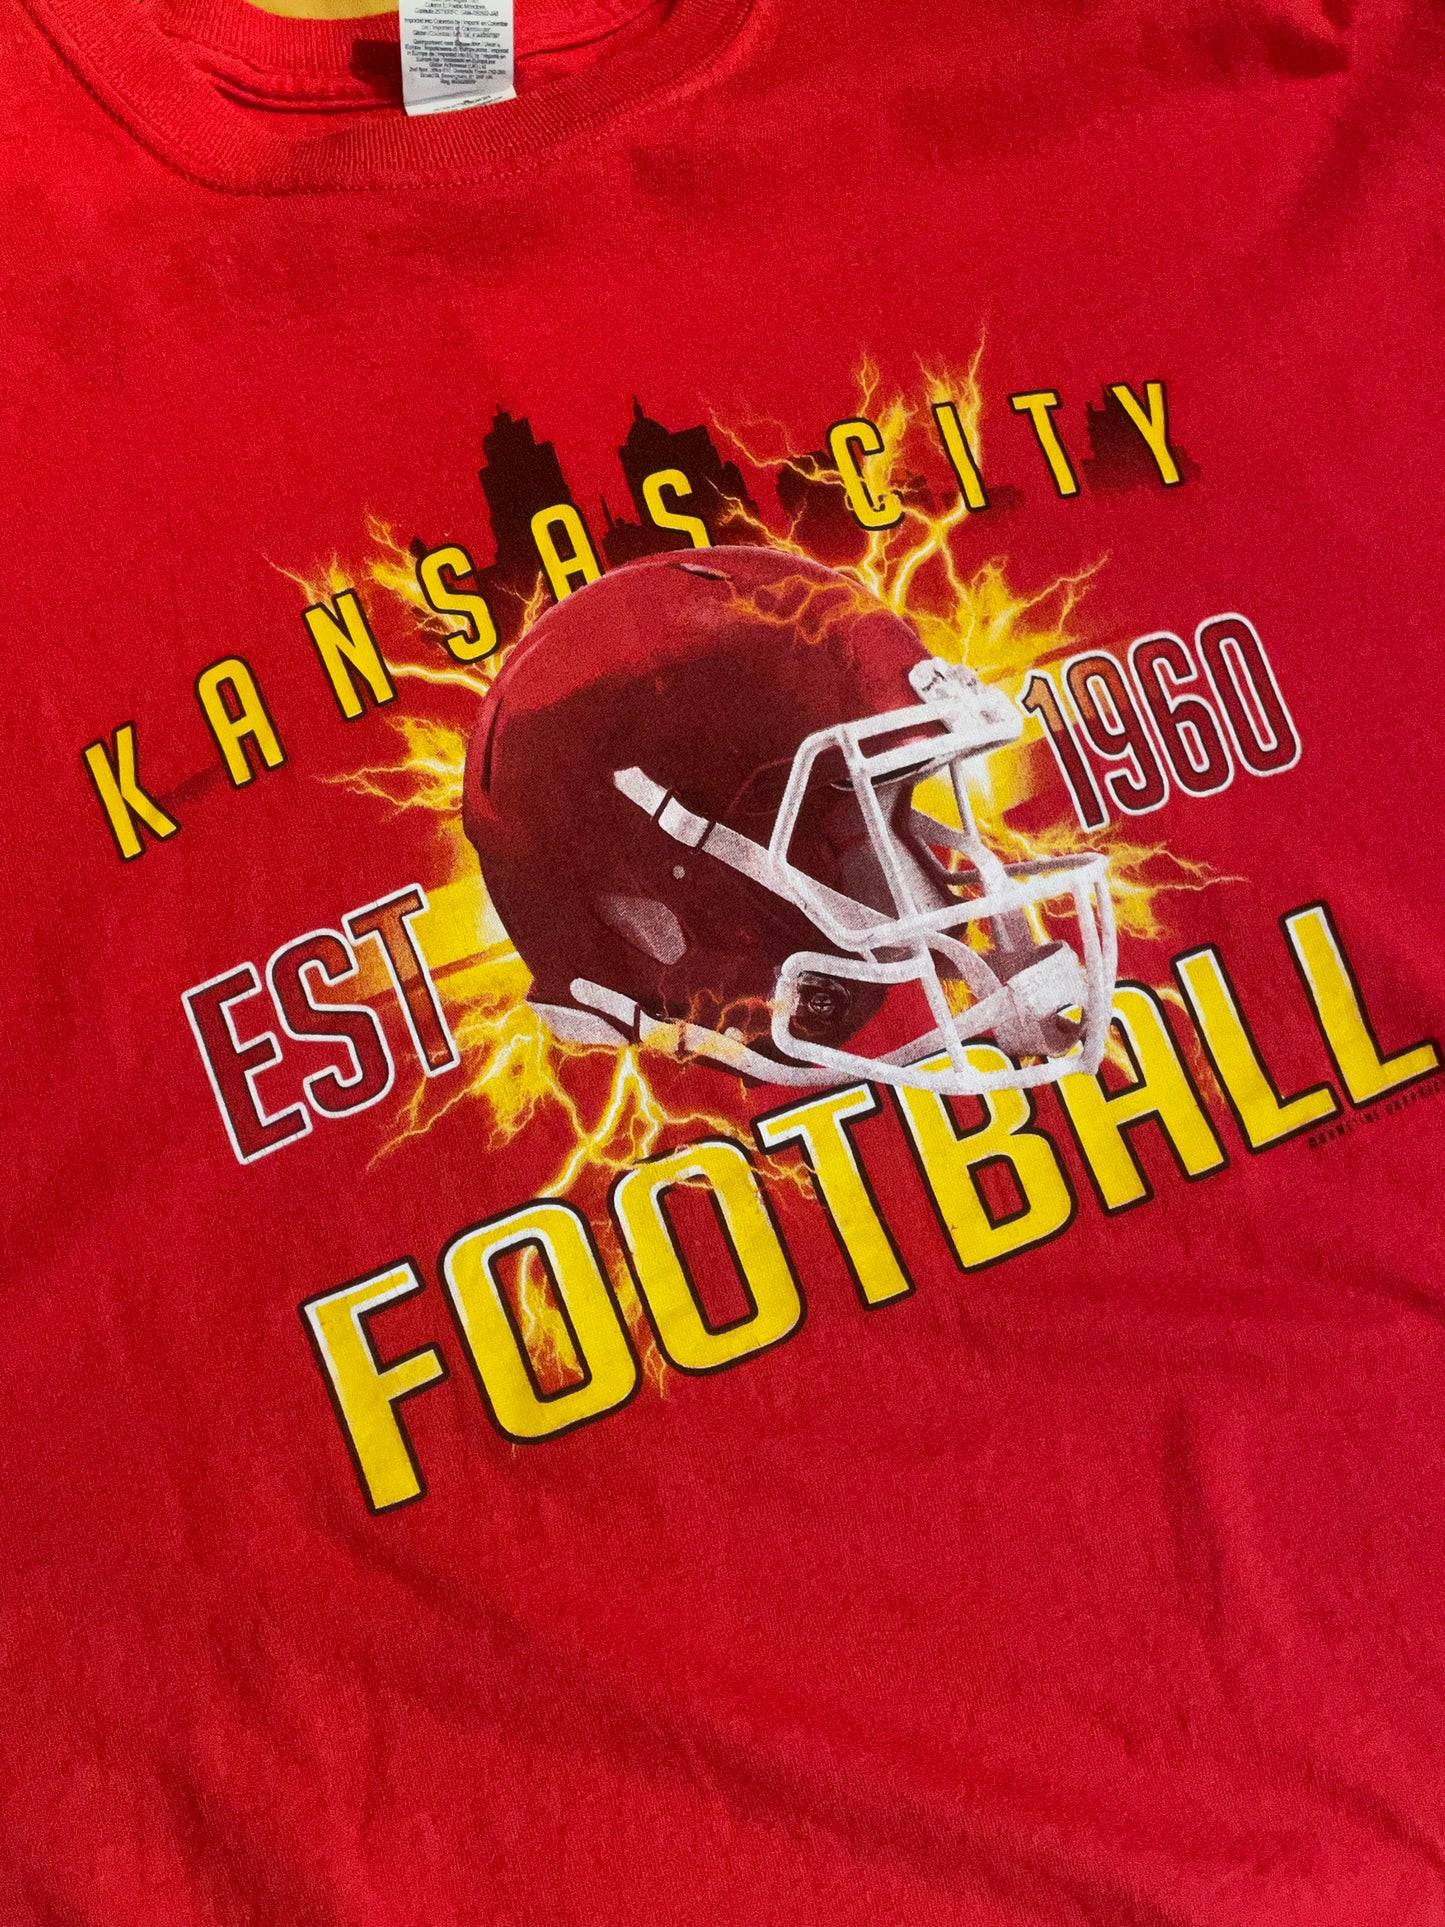 KANSAS CITY CHIEFS NFL FOOTBALL T-SHIRT  SZ: XL